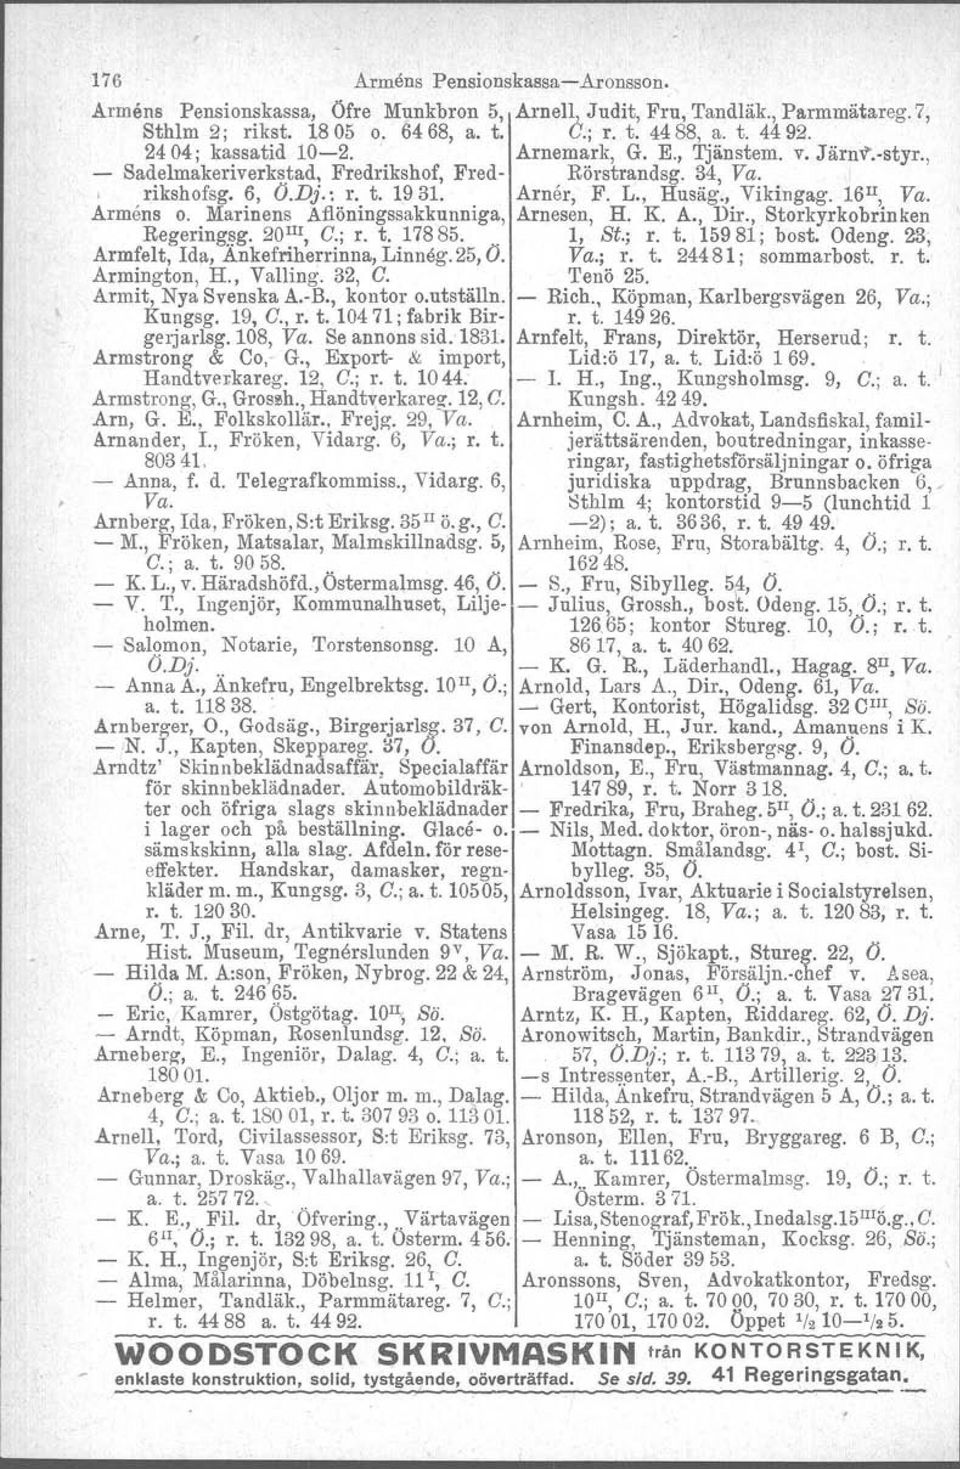 16 Il, Va. Armens o. Marinens Aflöningssakkunniga, Arnesen, H. K. A., Dir., Storkyrkobrinken Regerlngsg. 20 m, C.; r. t. 17885.. 1, St.; r. t. 15981; bost, Odeng.